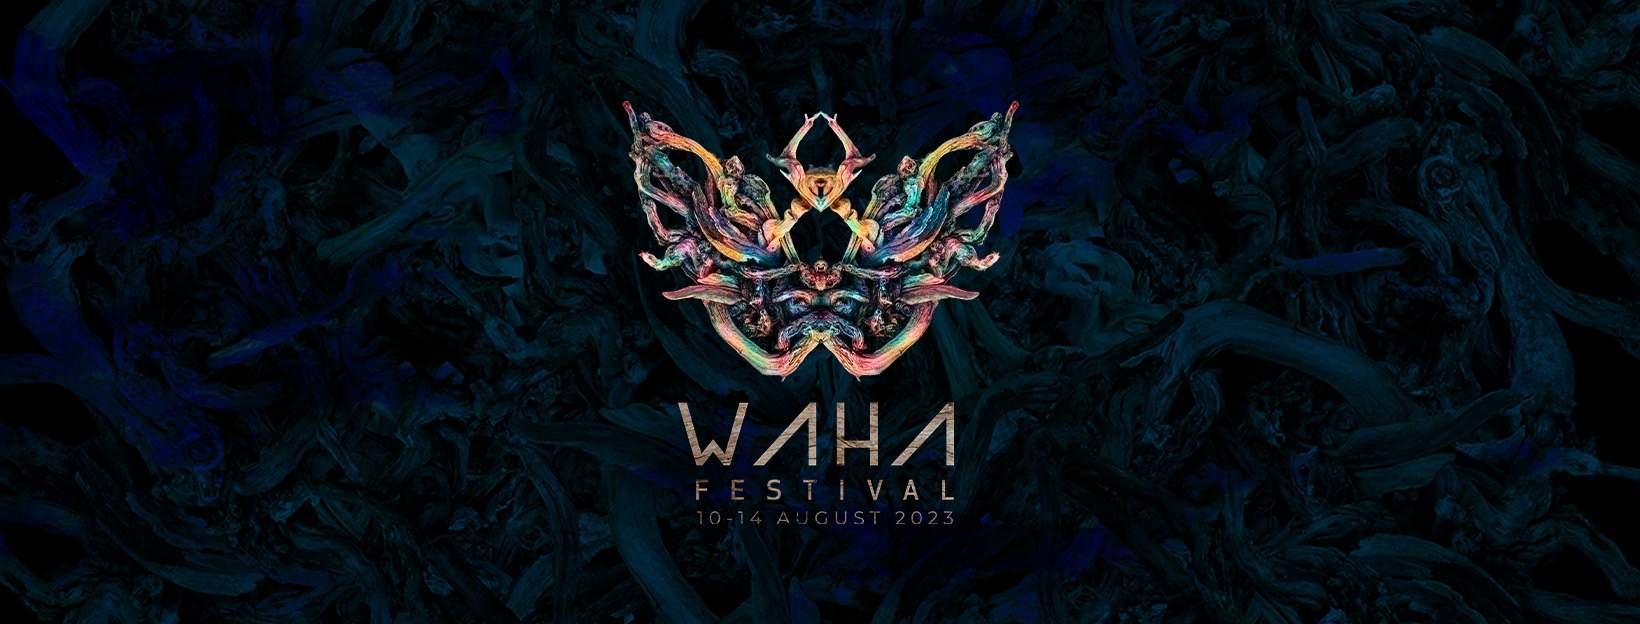 Waha Festival 2023 - フライヤー表